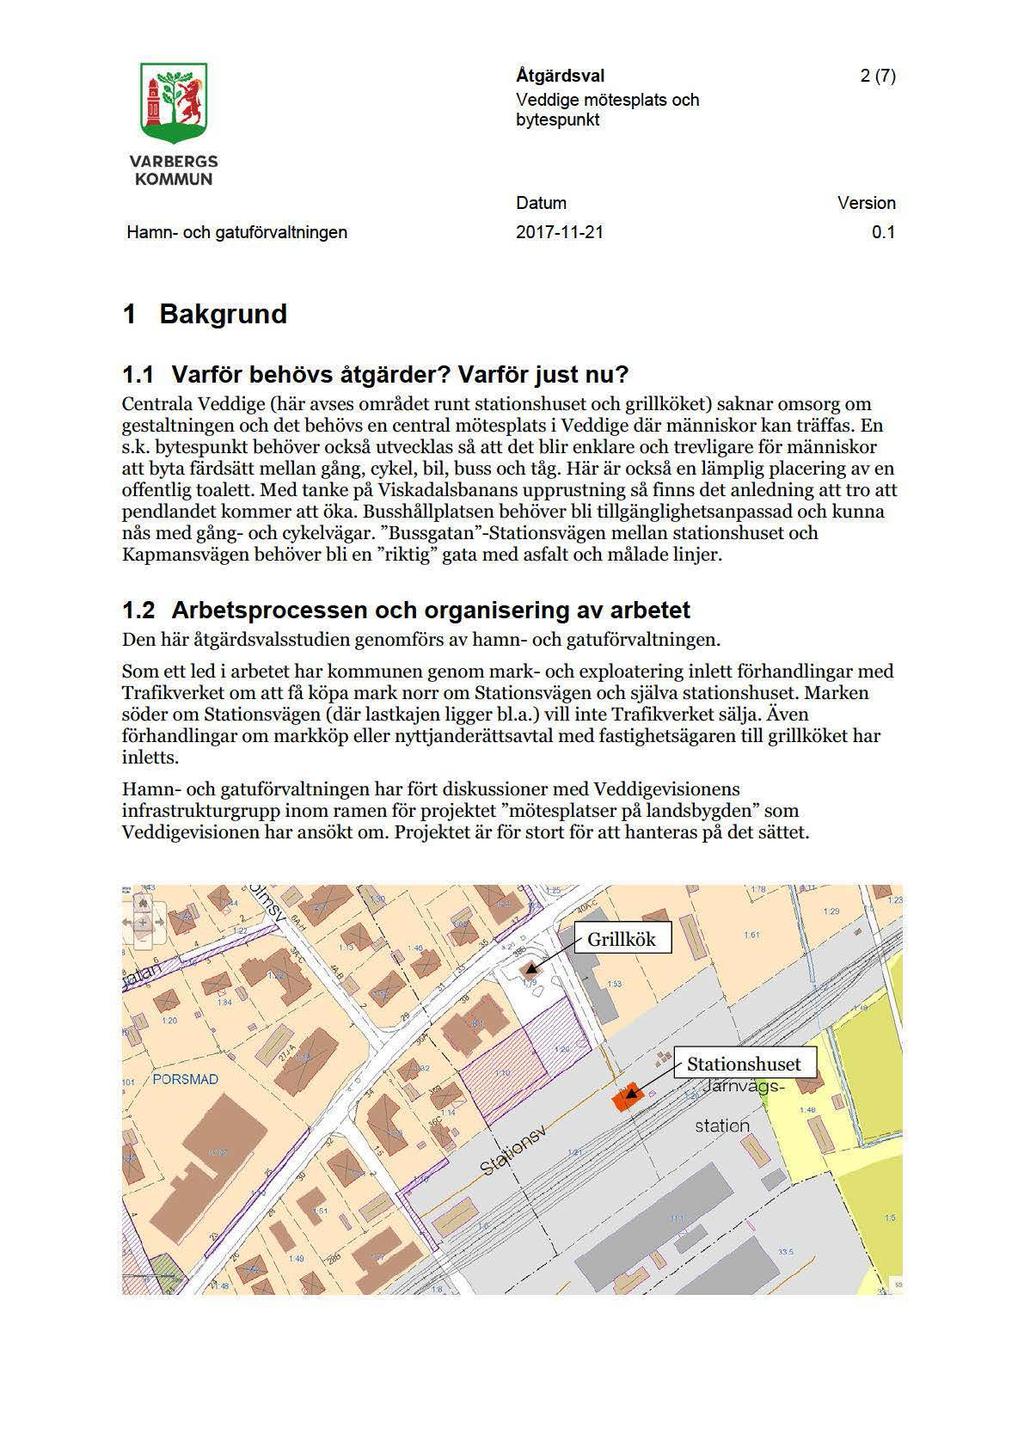 m ' Åtgärdsval 2 (7) Veddige mötesplats och bytespunkt VARBERGS KOMMUN Datum Version Hamn- och gatuförvaltningen 2017-11-21 0.1 1 Bakgrund 1.1 Varför behövs åtgärder? Varför just nu?